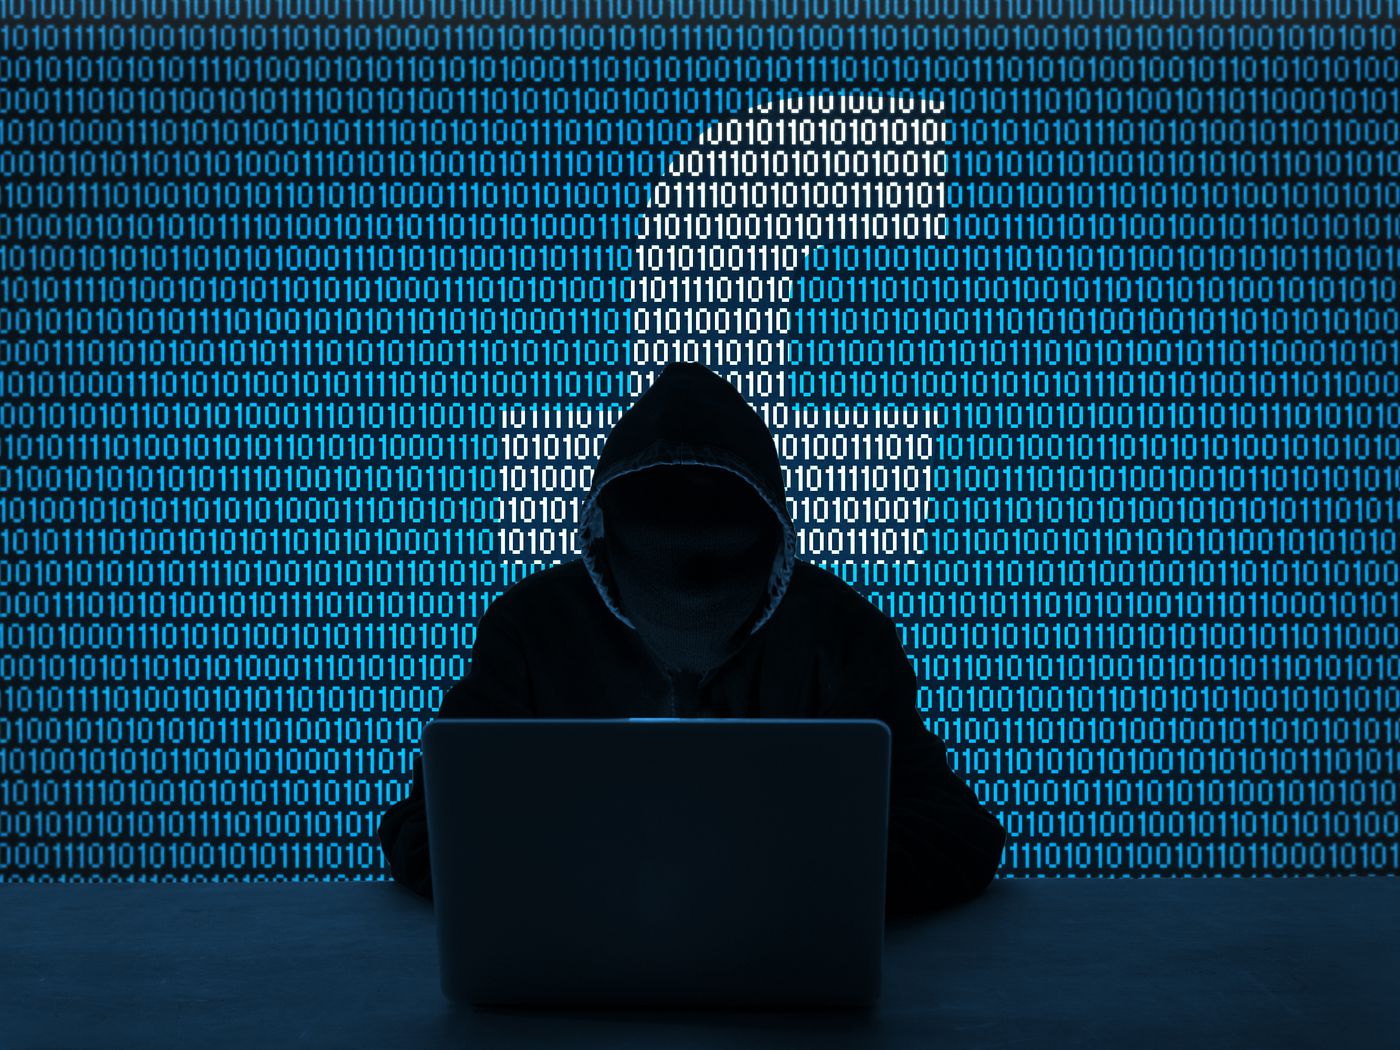 Des chercheurs découvrent le piratage de 100000 comptes Facebook